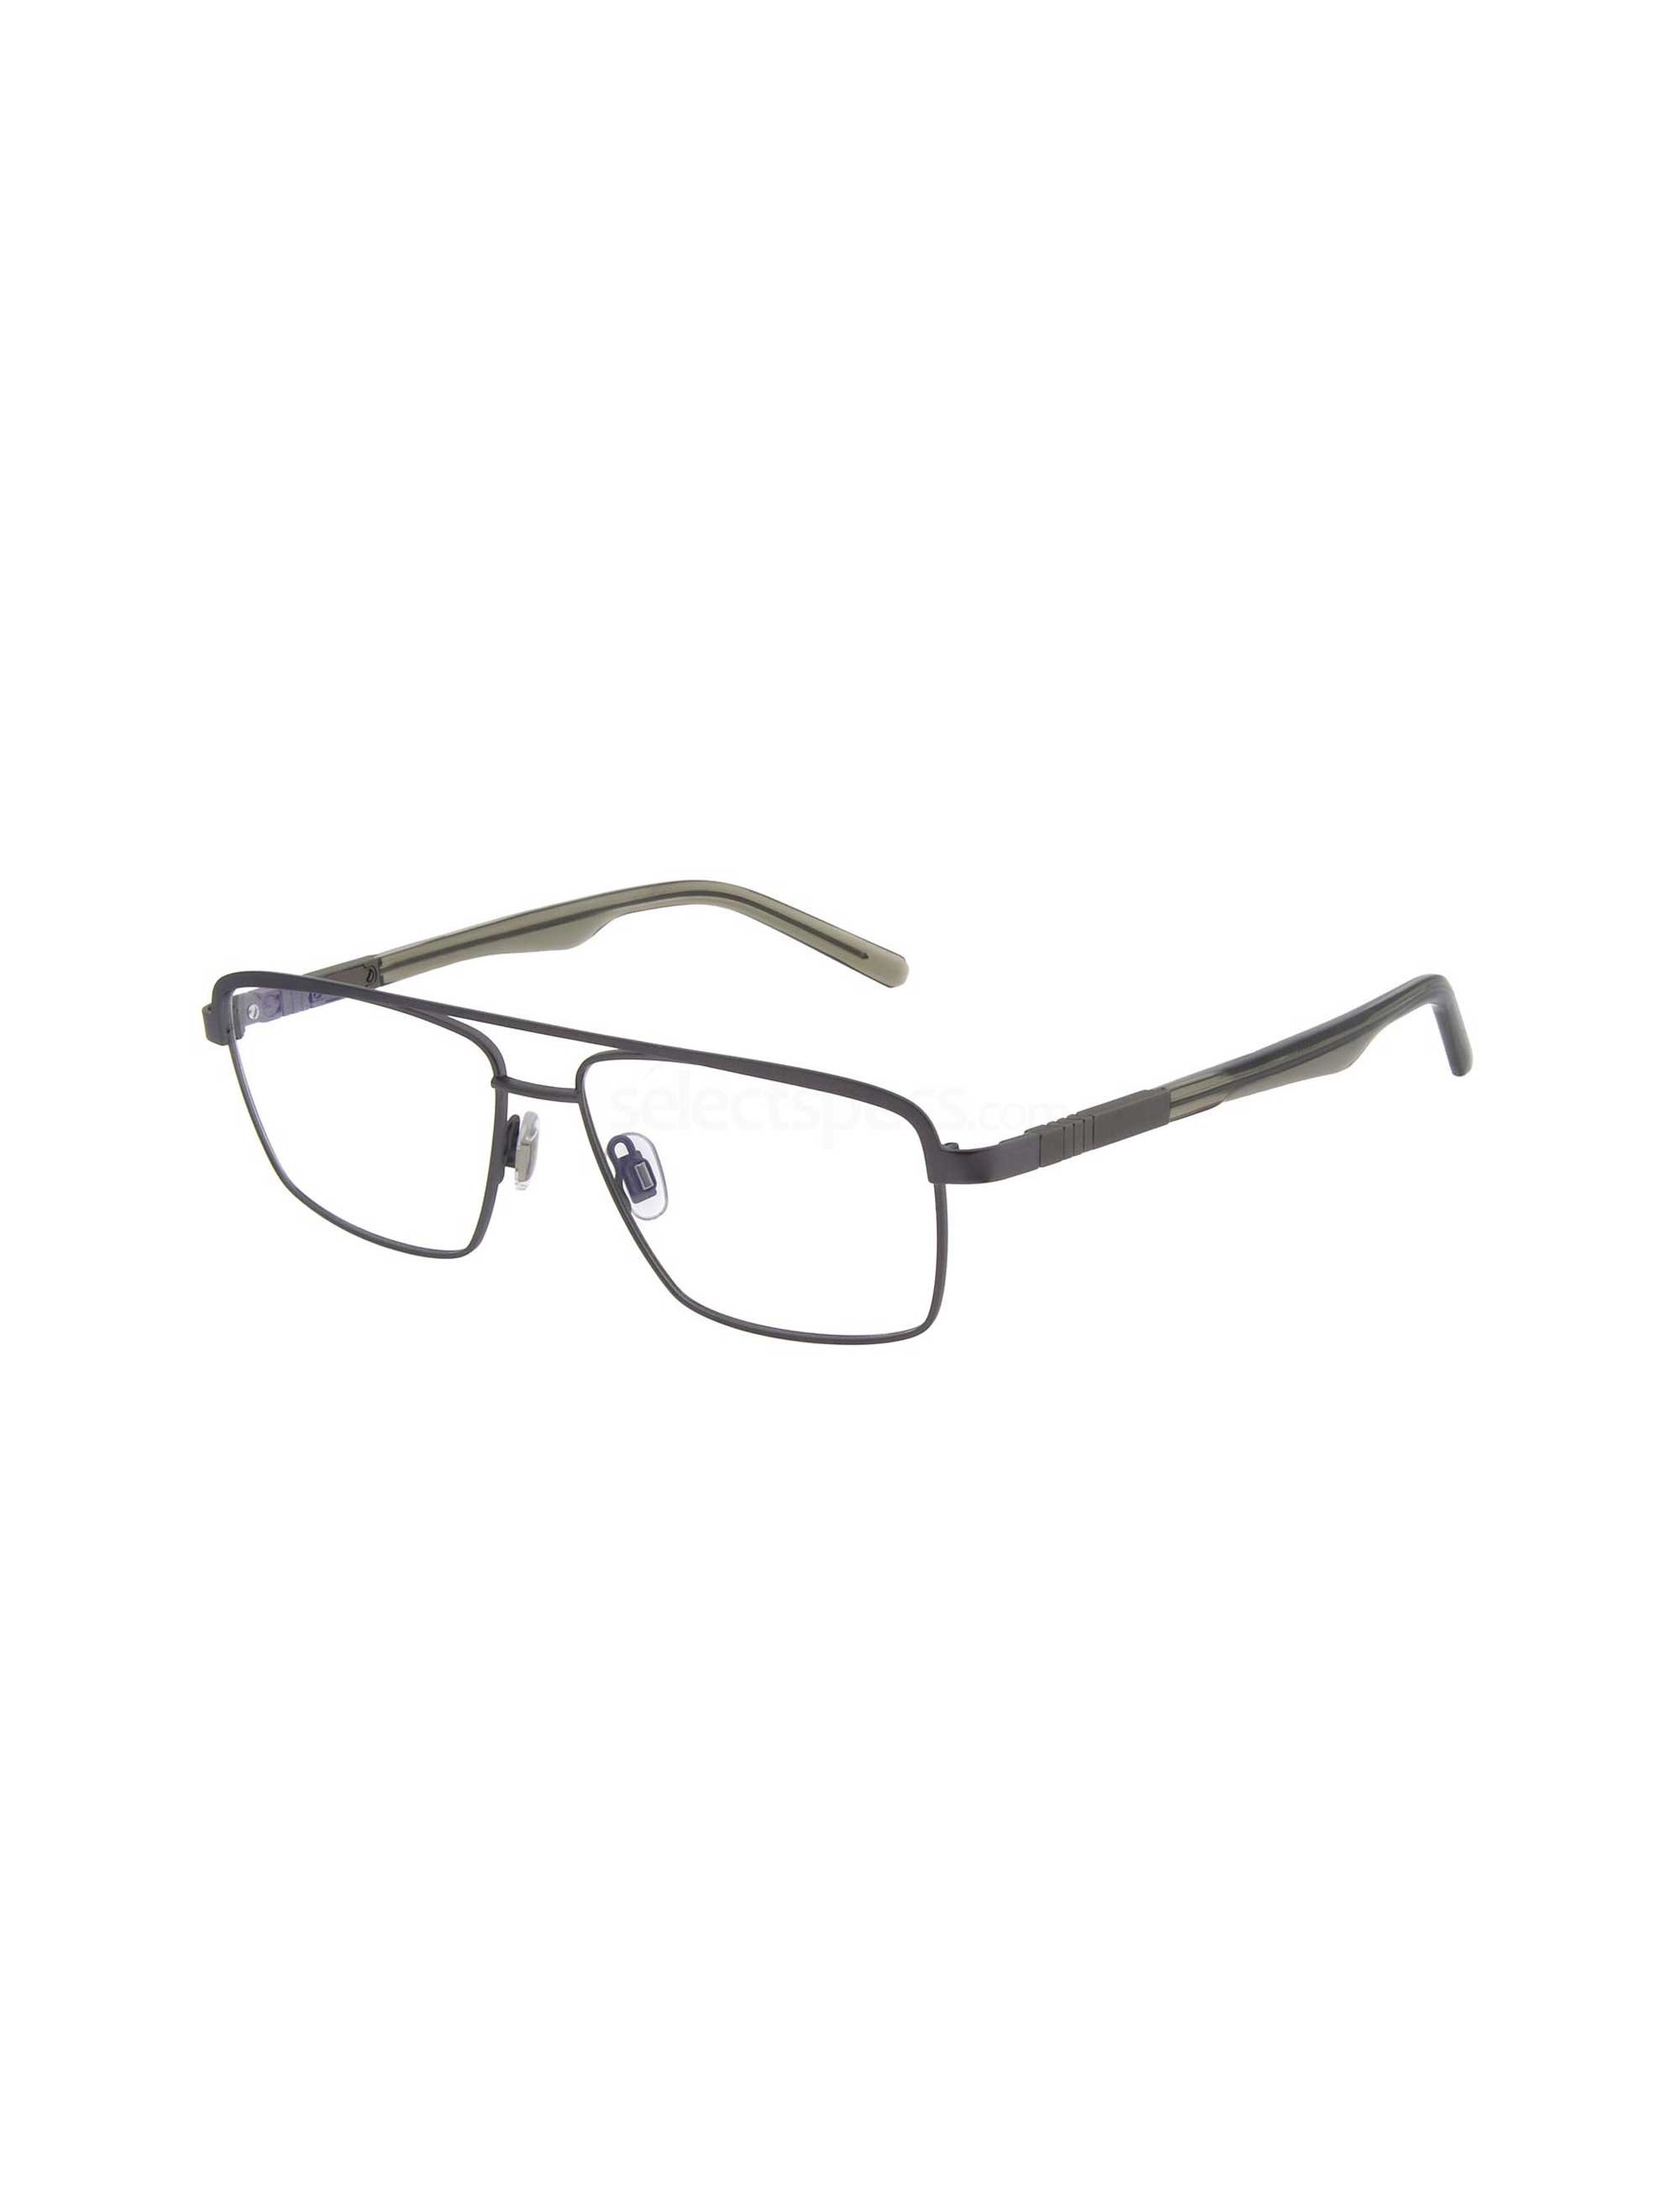 عینک طبی مستطیلی مردانه - اسپاین - زيتوني - 1